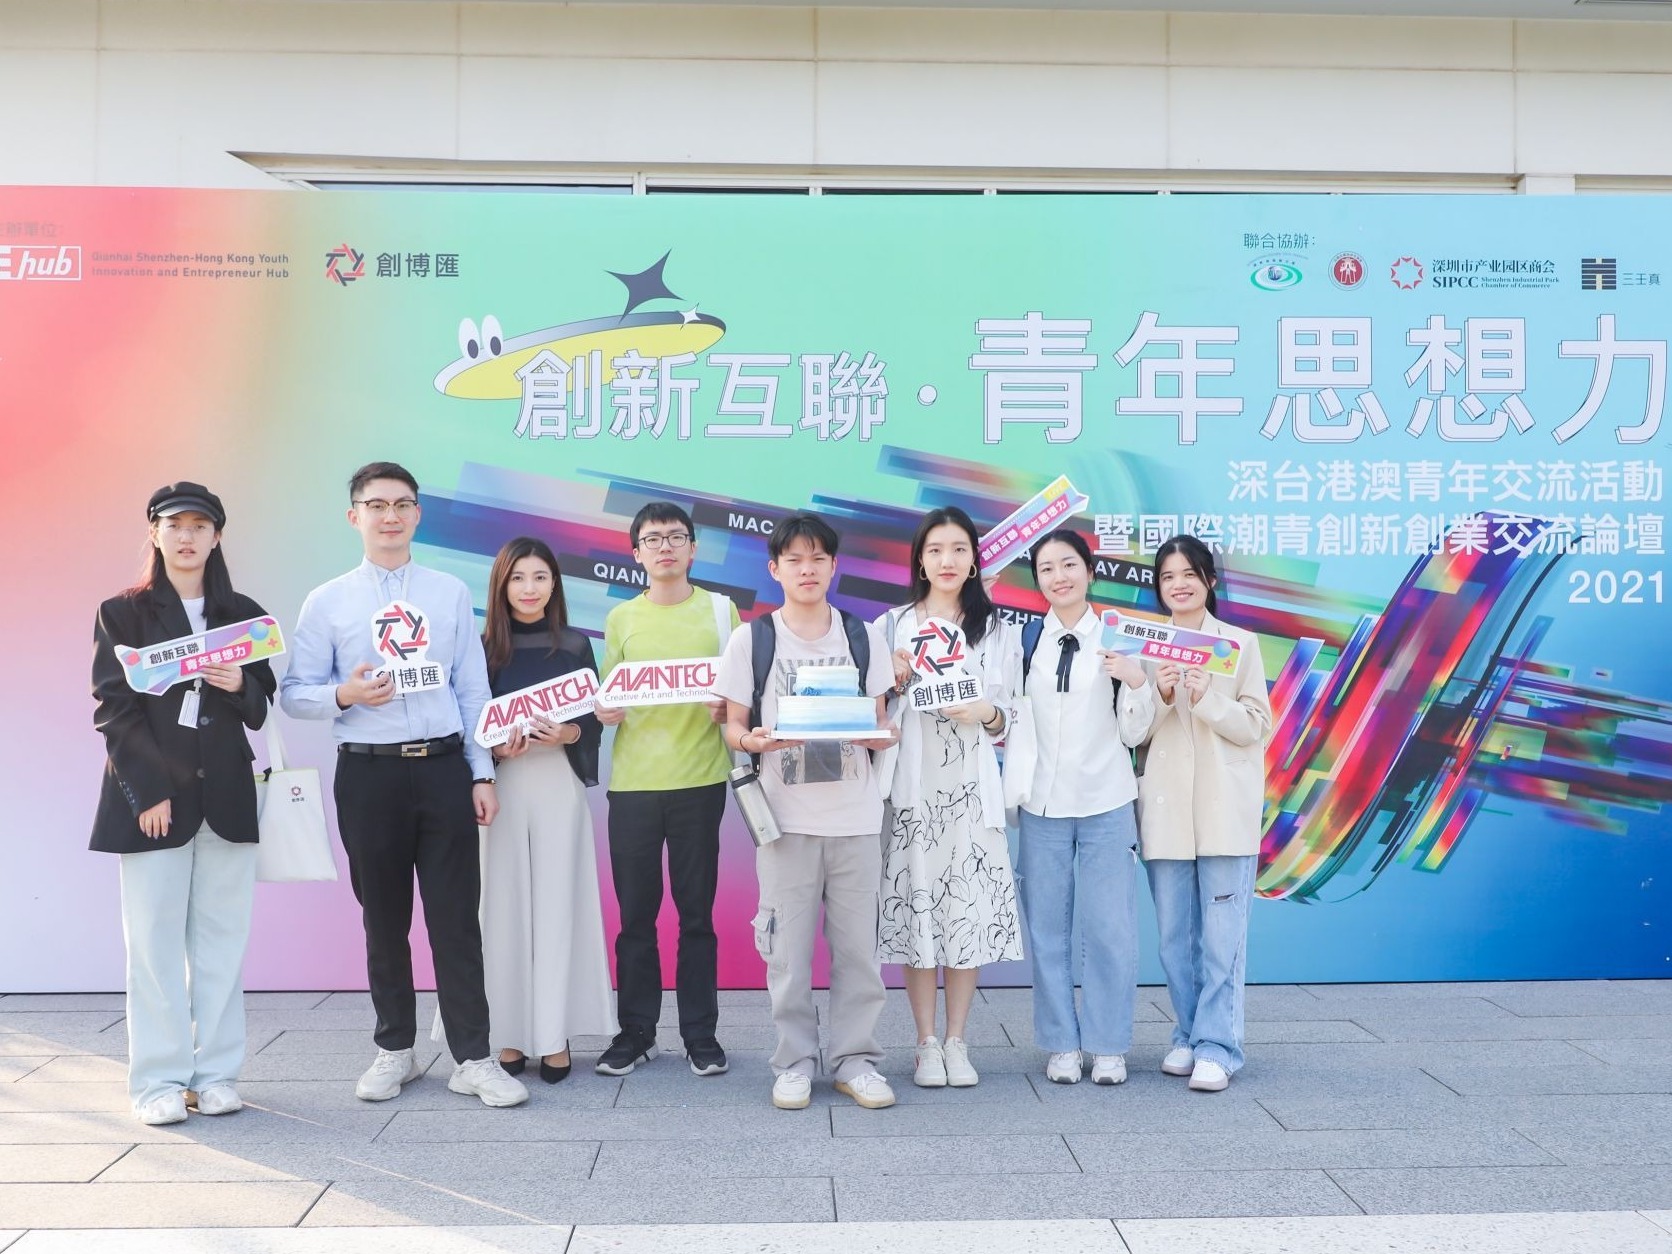 26个台湾青年创业团队进驻前海